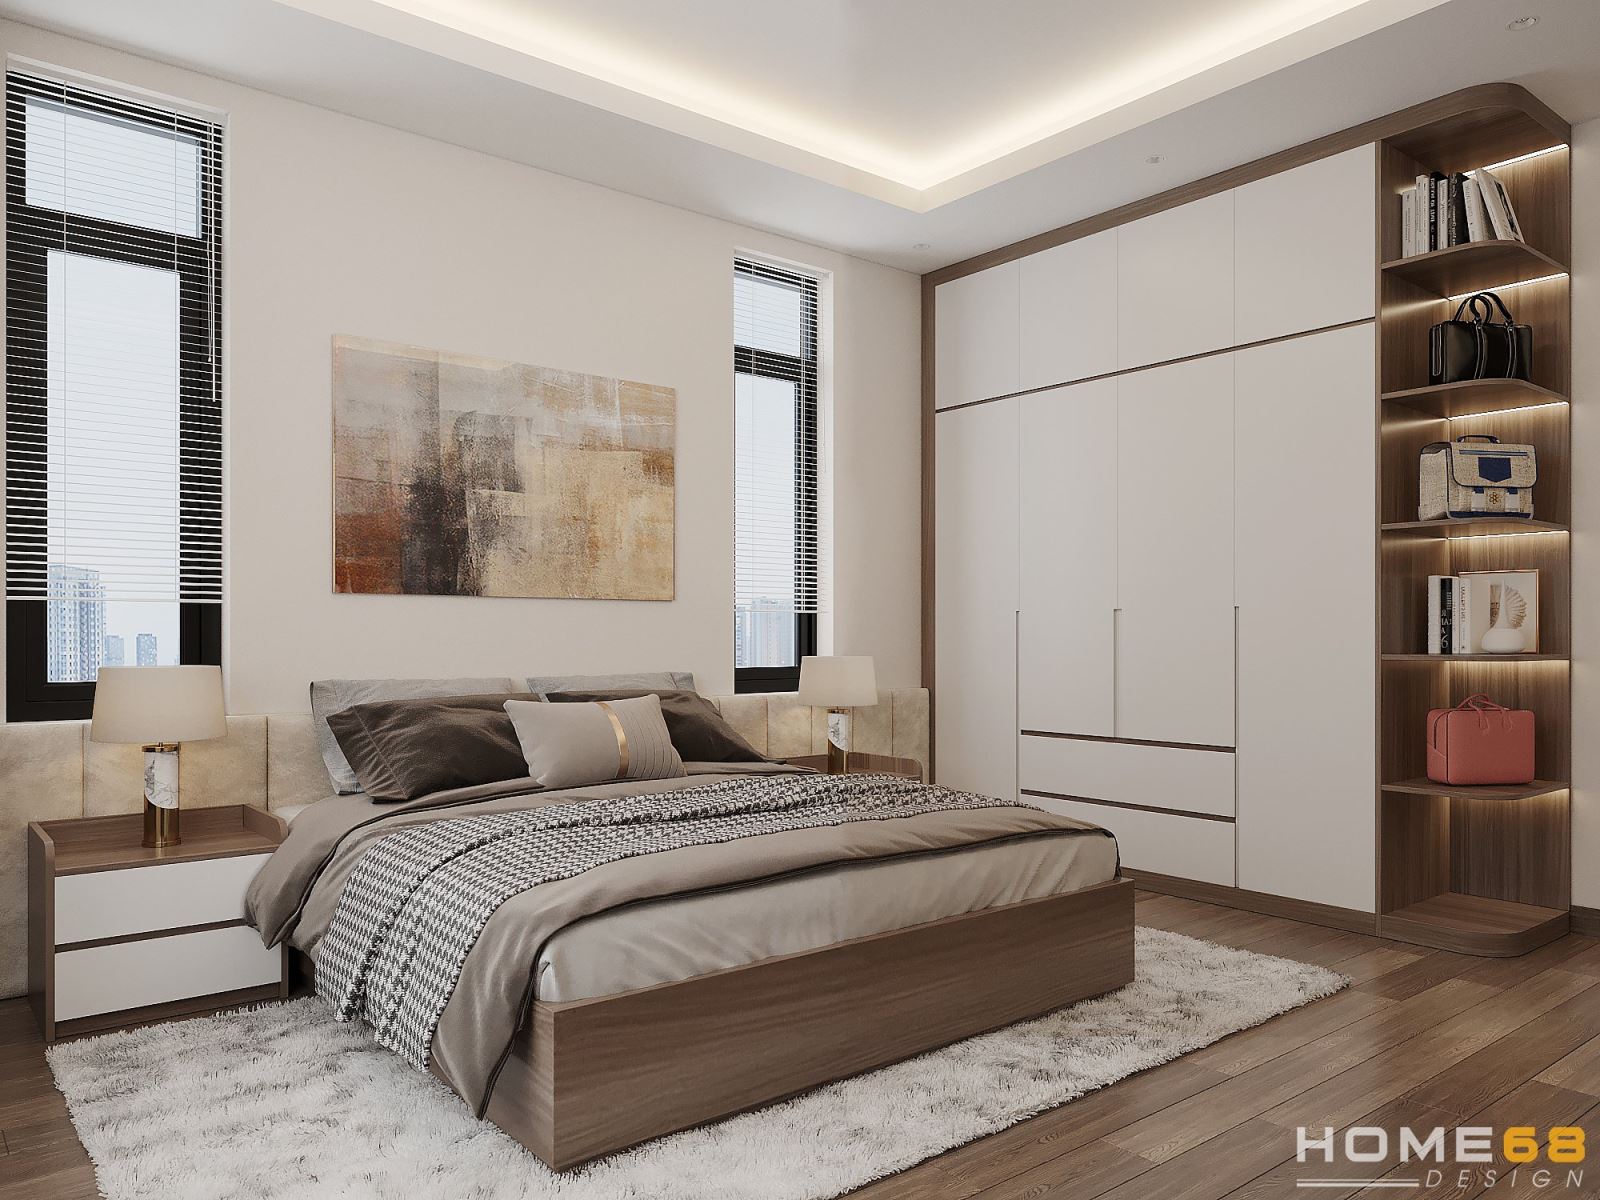 HOME68 thiết kế nội thất phòng ngủ master hiện đại, đẳng cấp